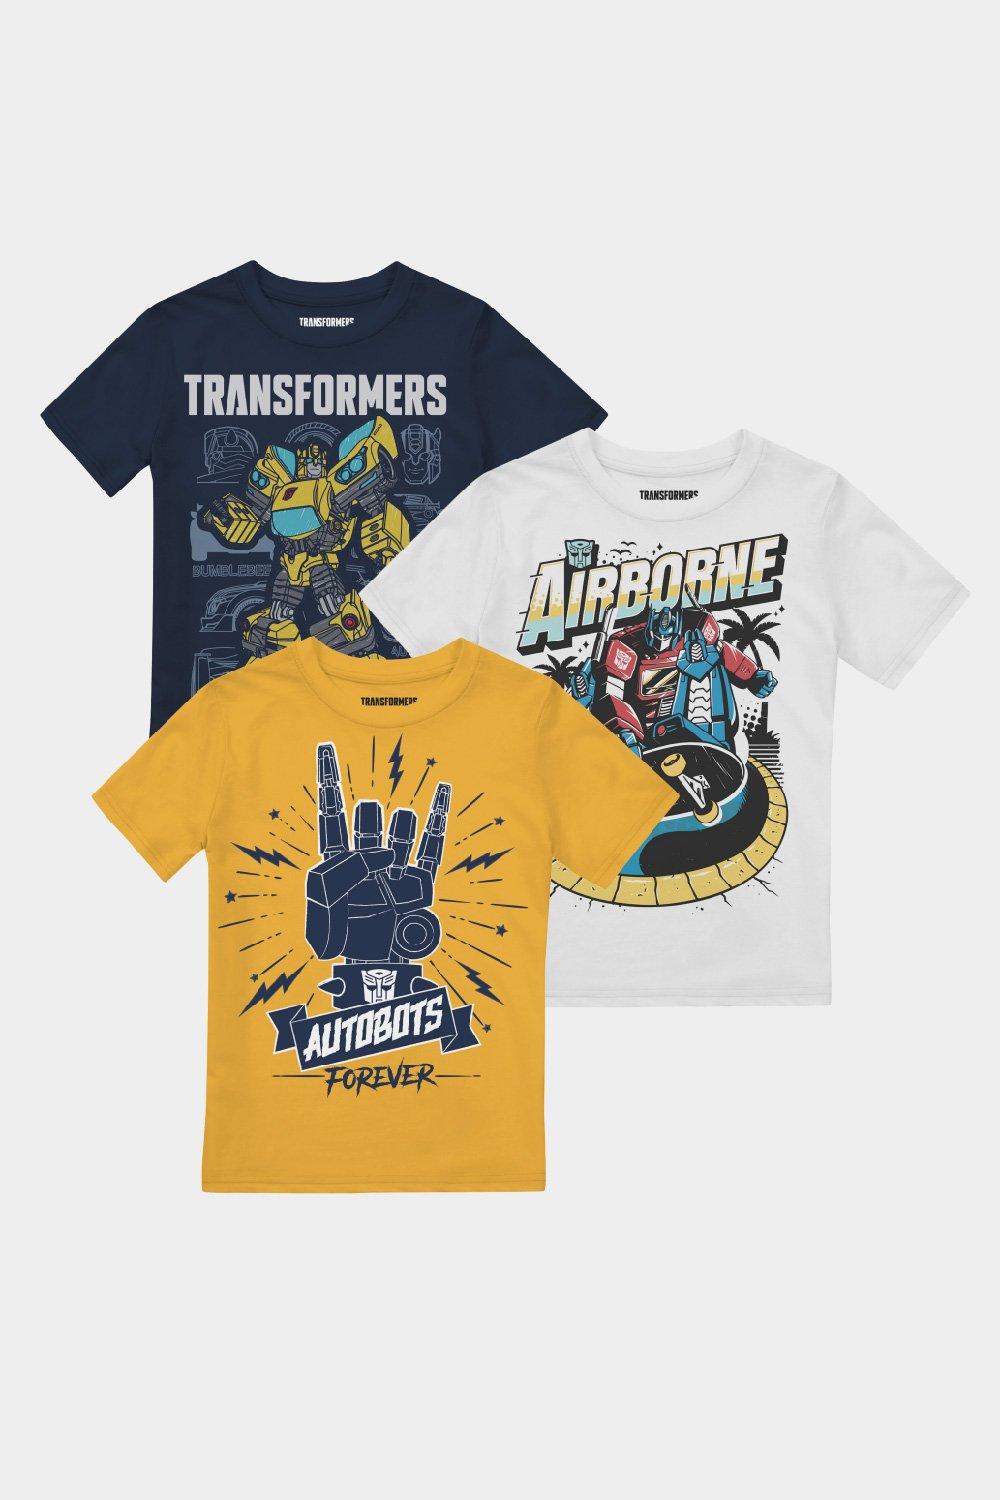 Комплект футболок для мальчиков Optimus & Bumblebee, 3 шт. Transformers, мультиколор набор машинок hollywood rides transformers – starscream bumblebee optimus prime 3 шт